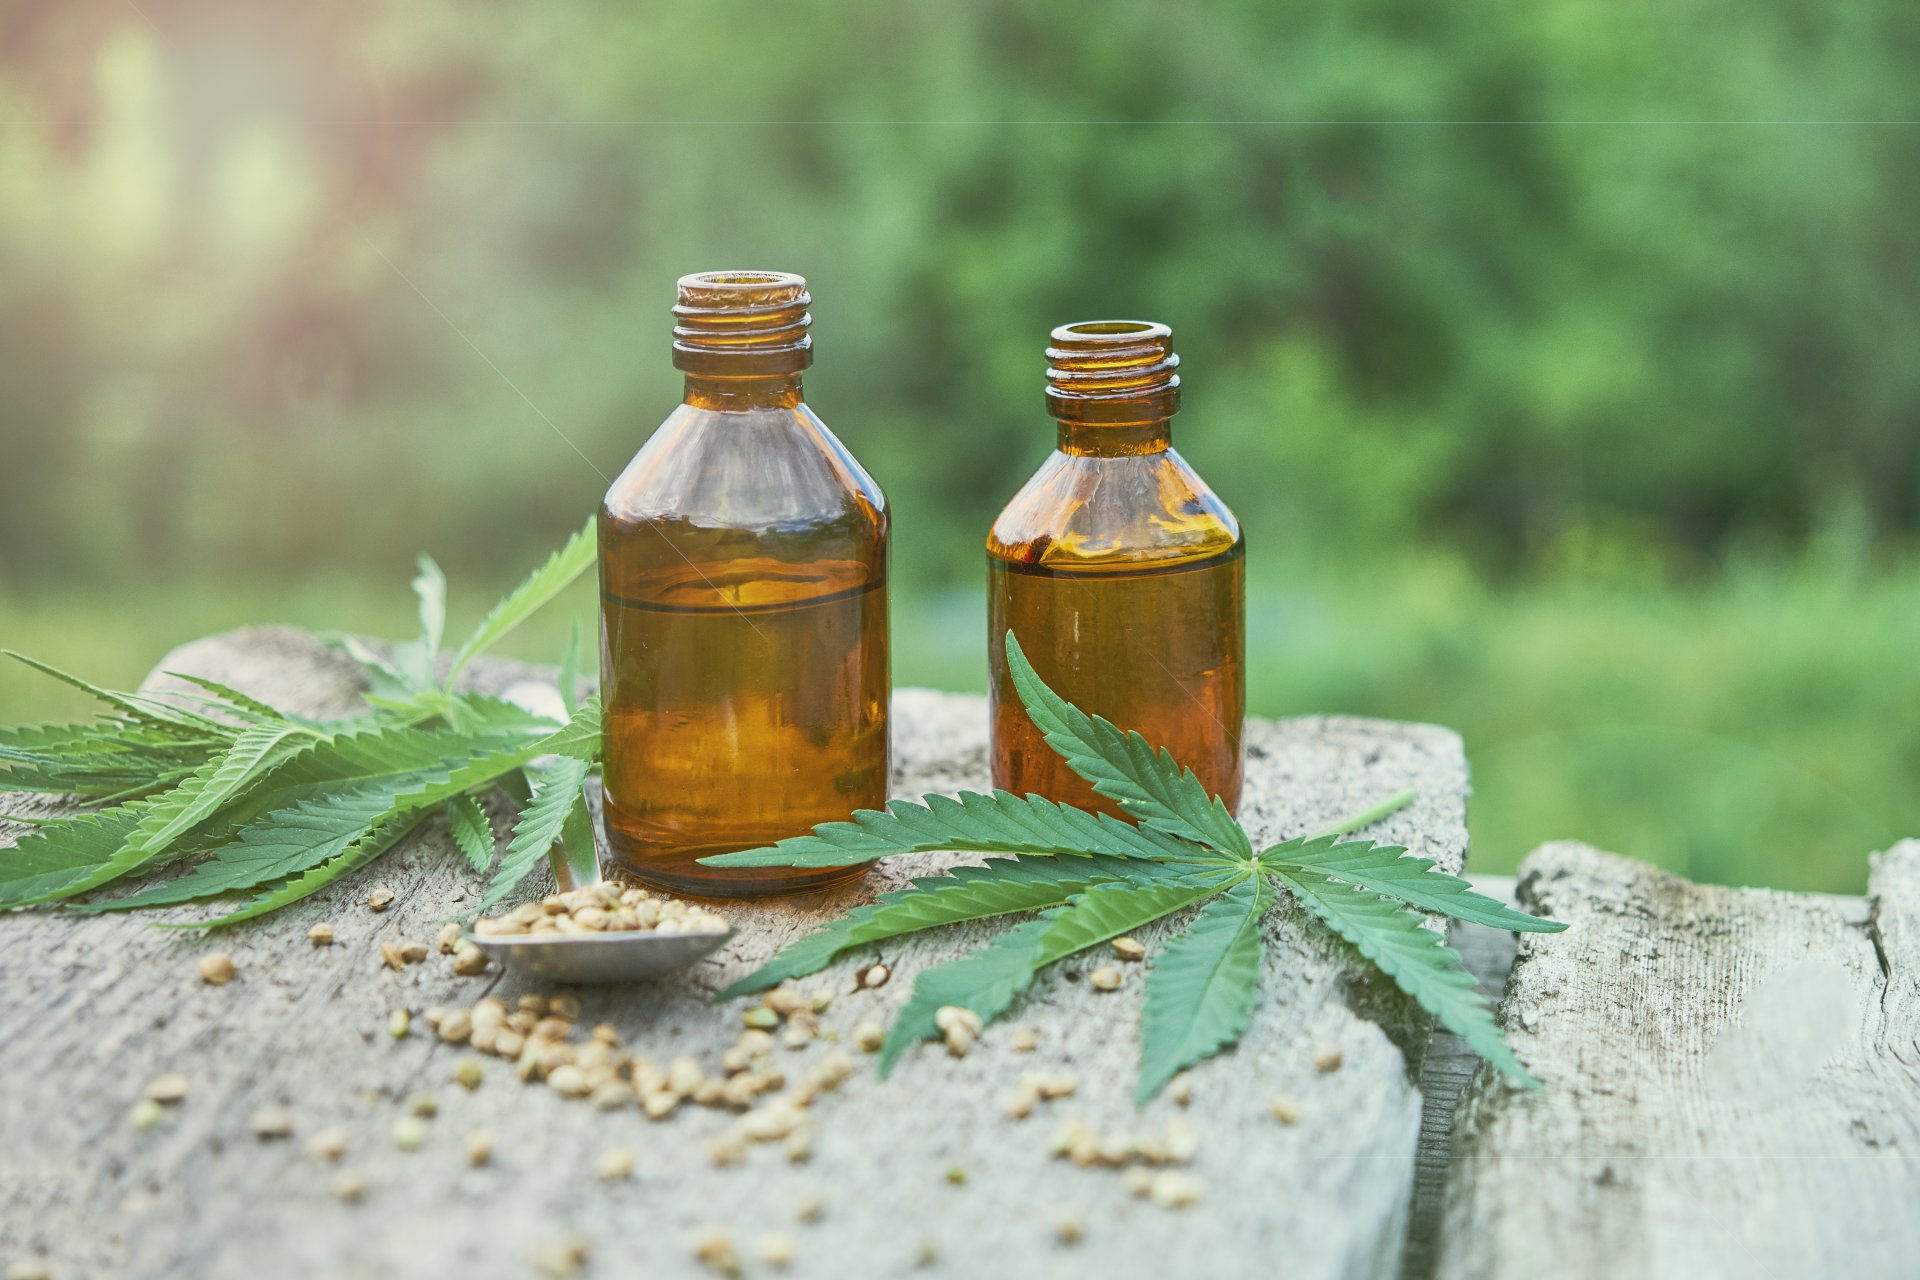 Zwei braune Flaschen auf einem Felsen, umgeben von 2 Cannabisblättern und Cannabissamen.